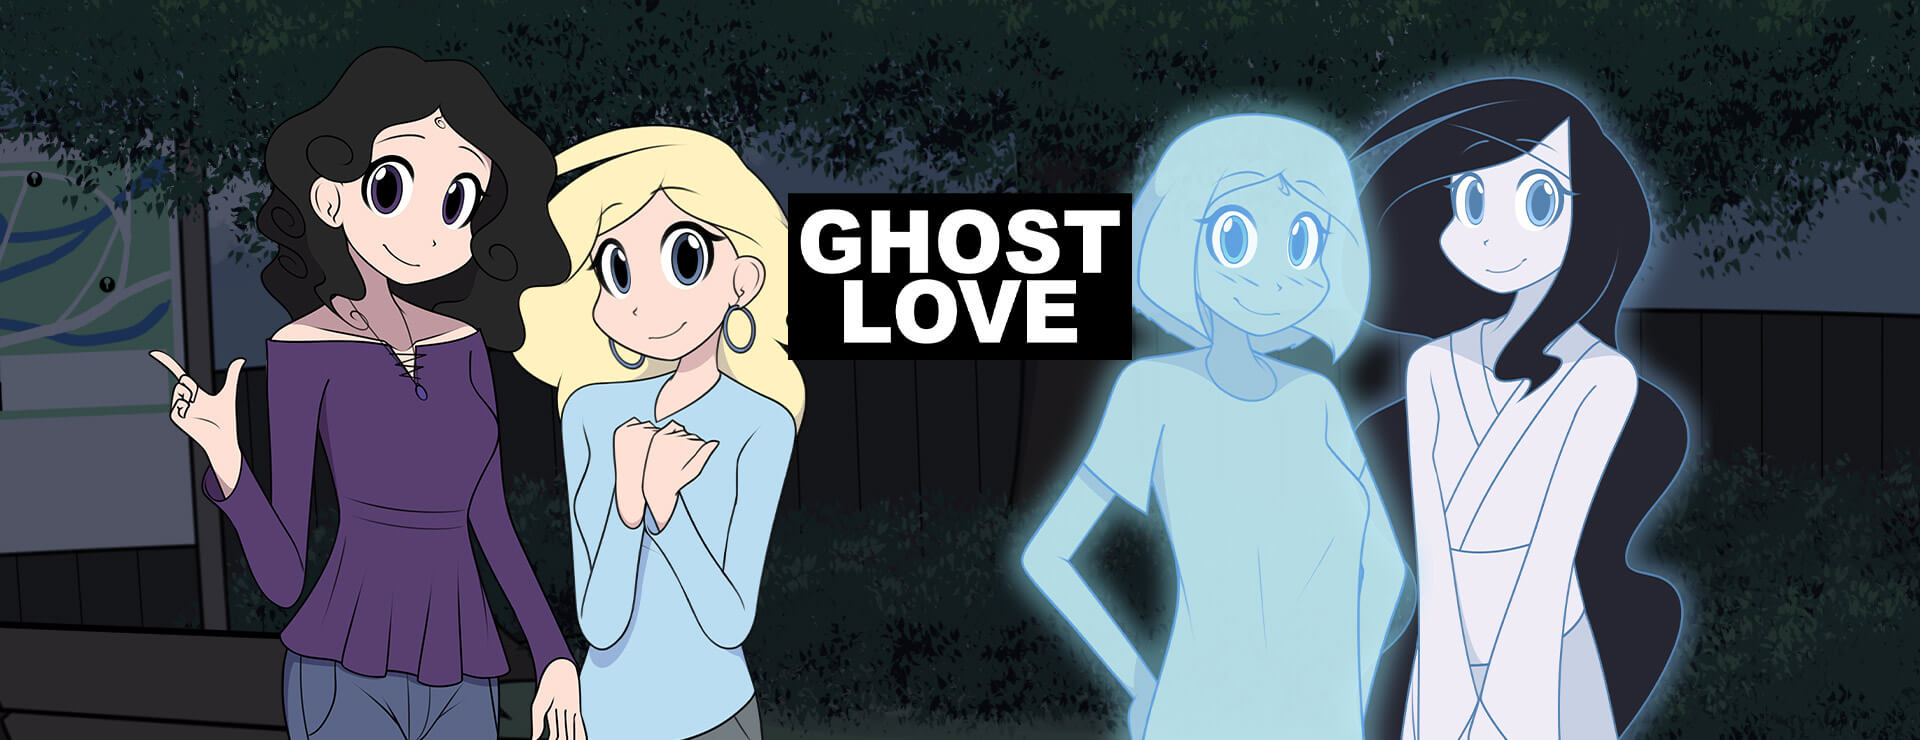 Ghost Love - ビジュアルノベル ゲーム